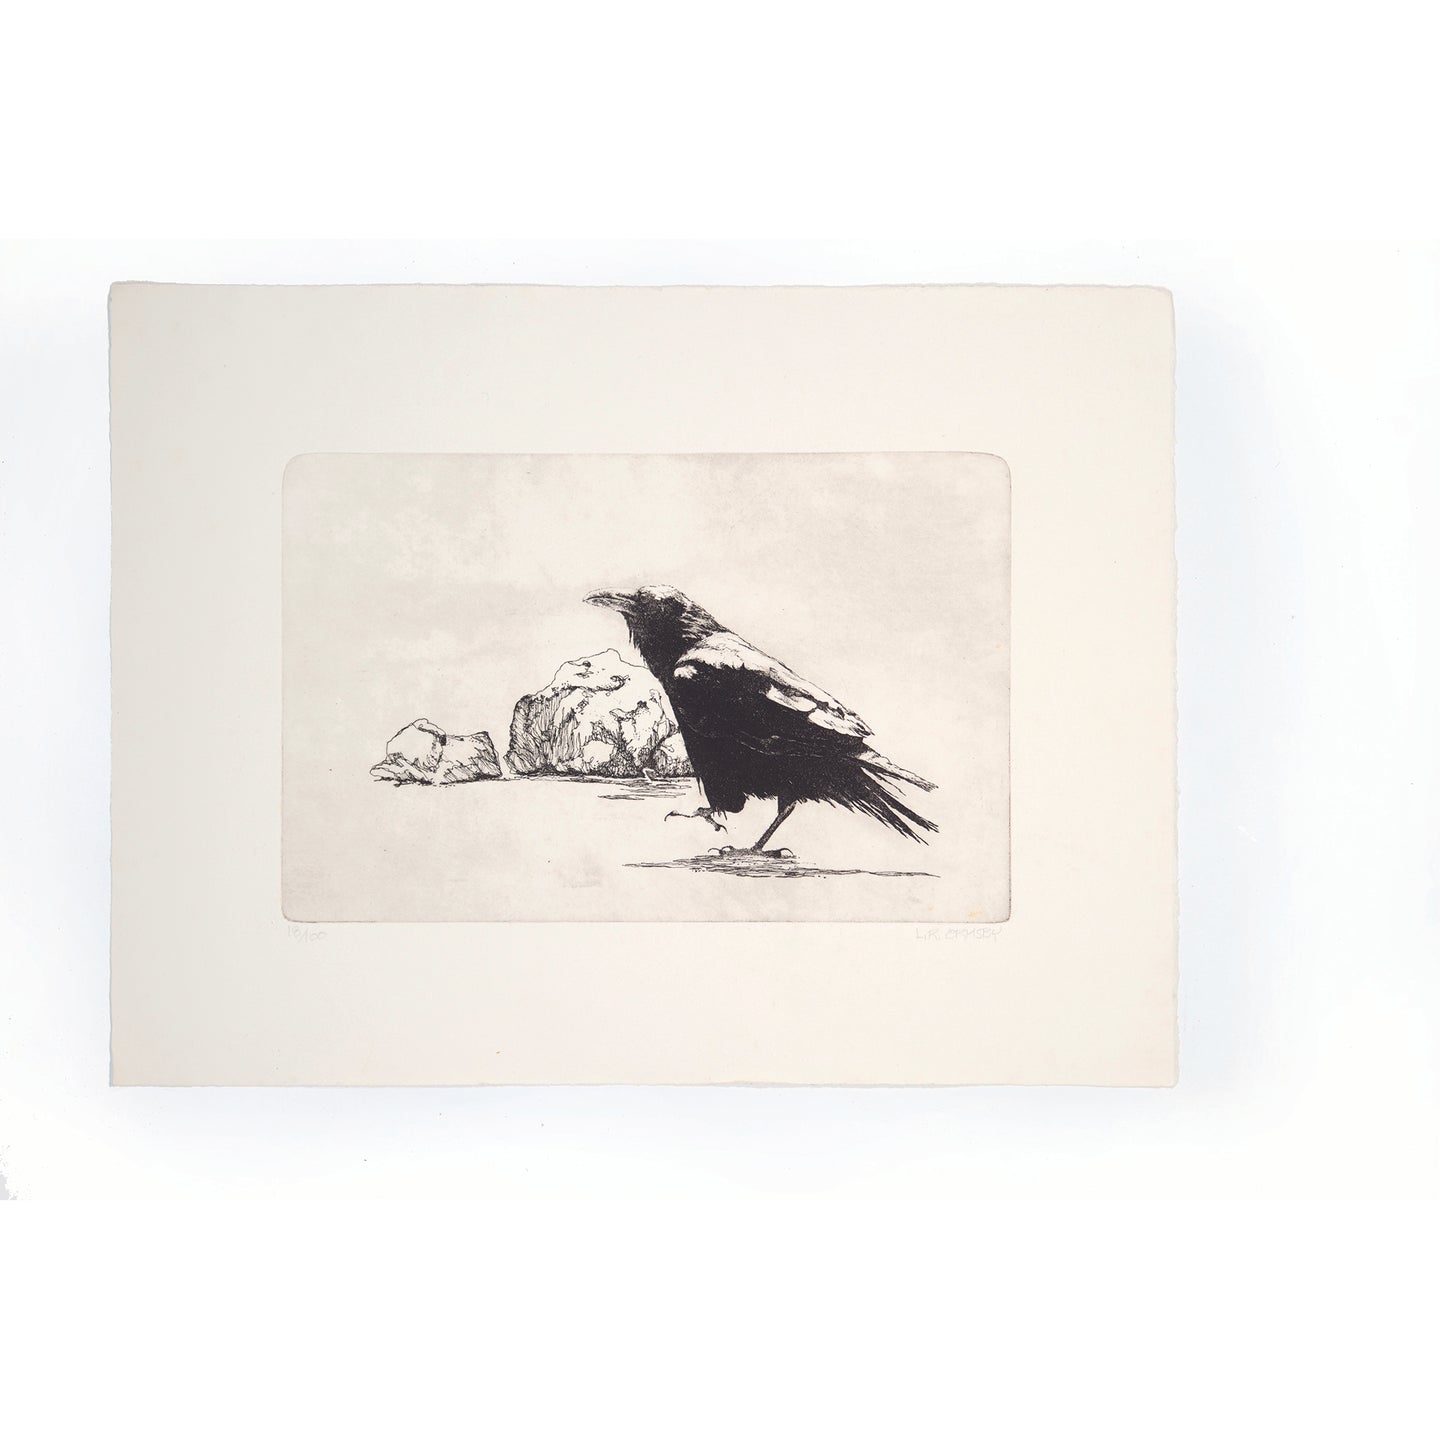 Raven walking etching